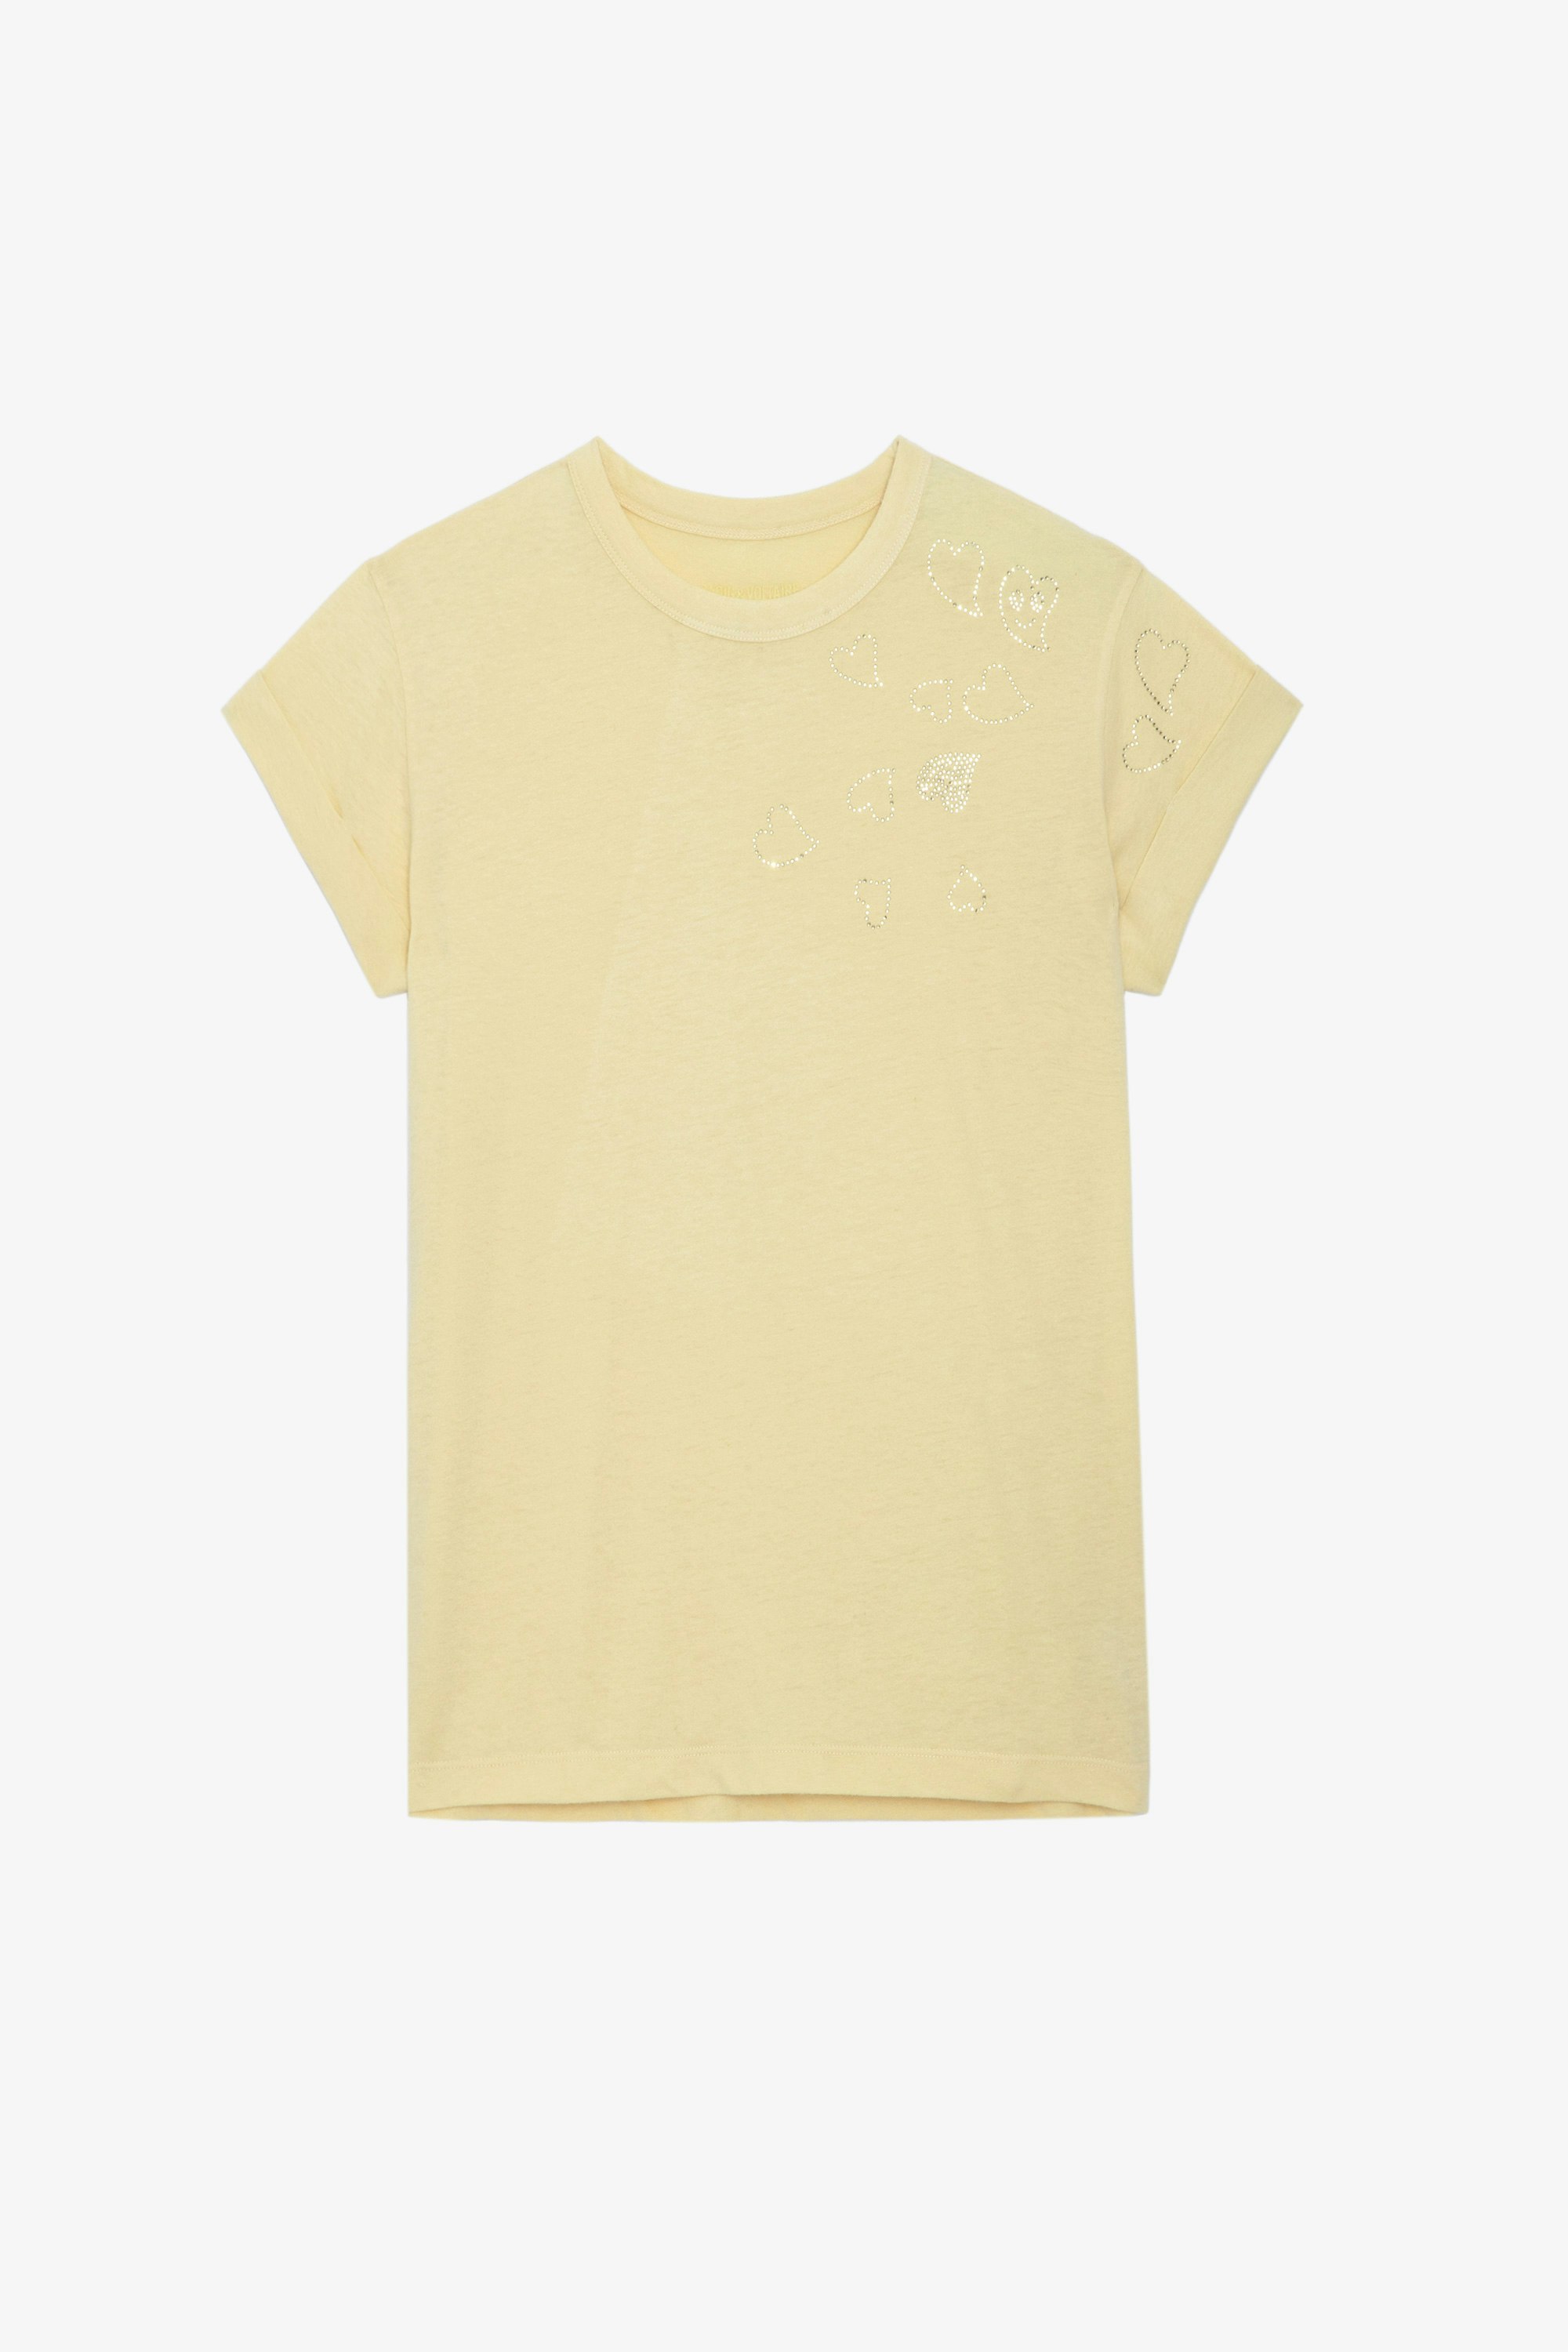 T-shirt Anya Strass - T shirt giallo chiaro girocollo con maniche corte e strass a cuore.